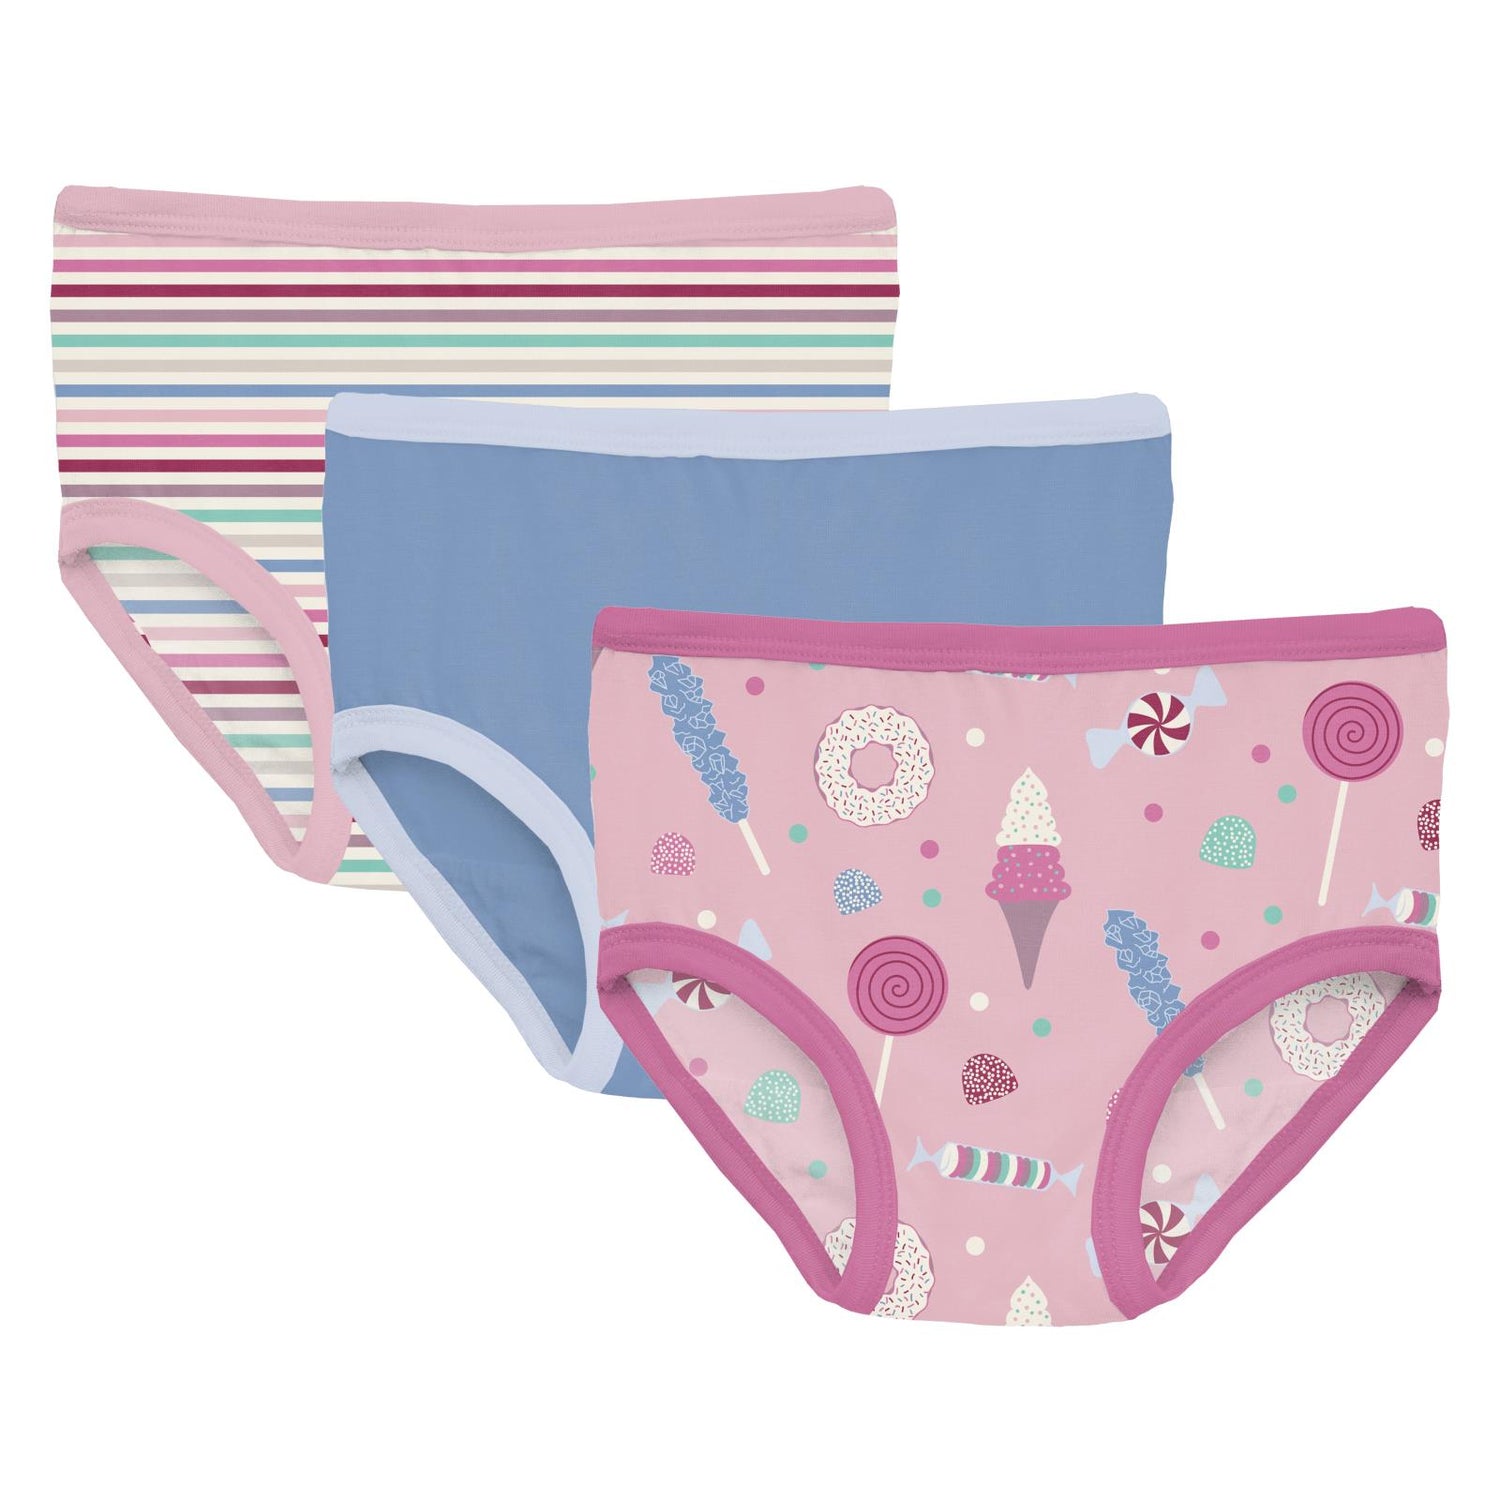 Print Girl's Underwear Set of 3 in Make Believe Stripe, Dream Blue & Cake Pop Candy Dreams